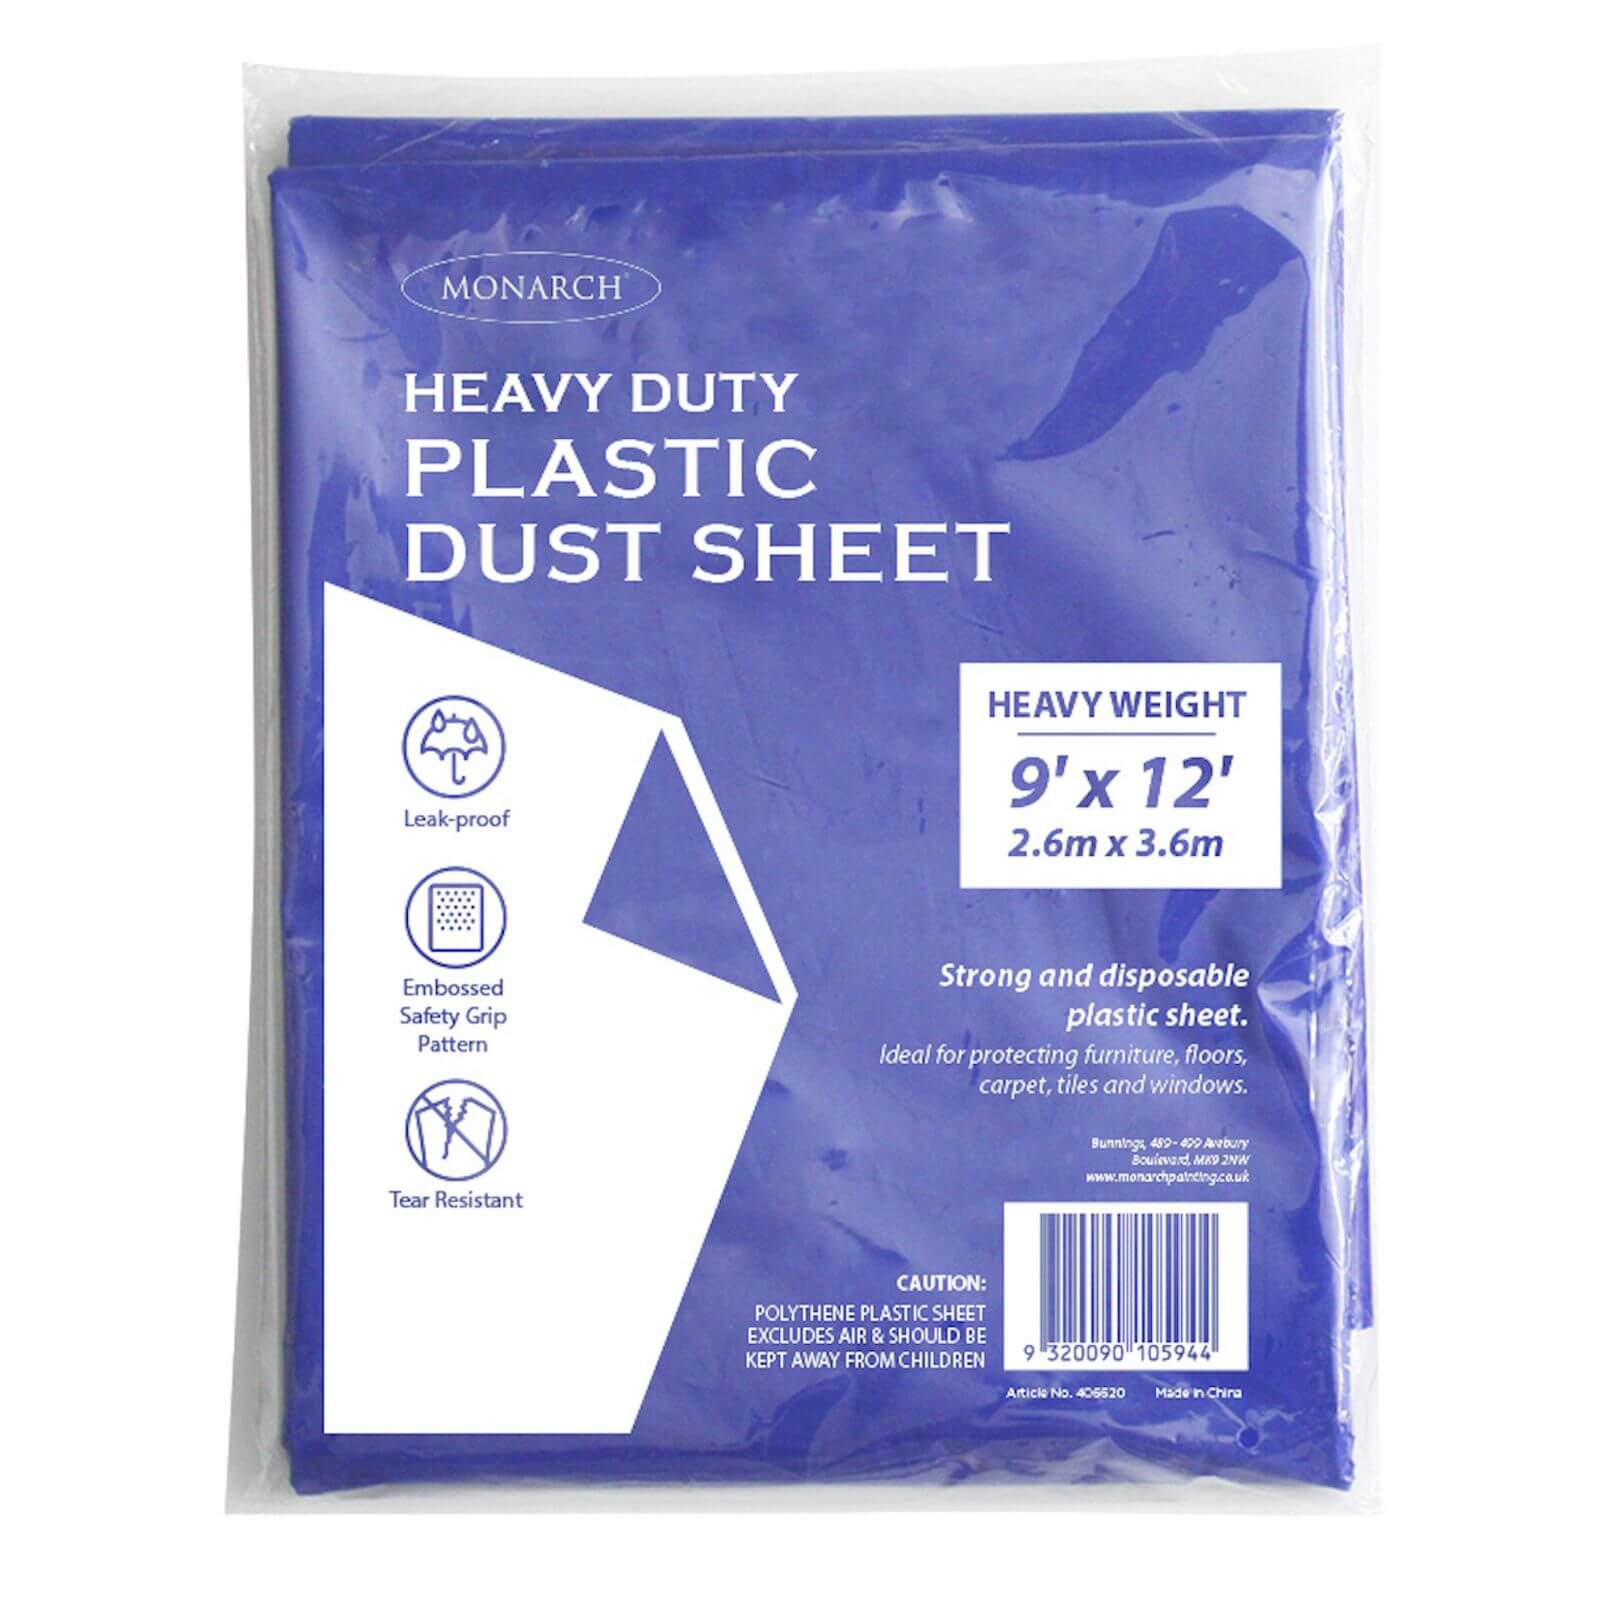 Monarch Heavy Duty Plastic Dust Sheet - Blue - 2.6m x 3.6m